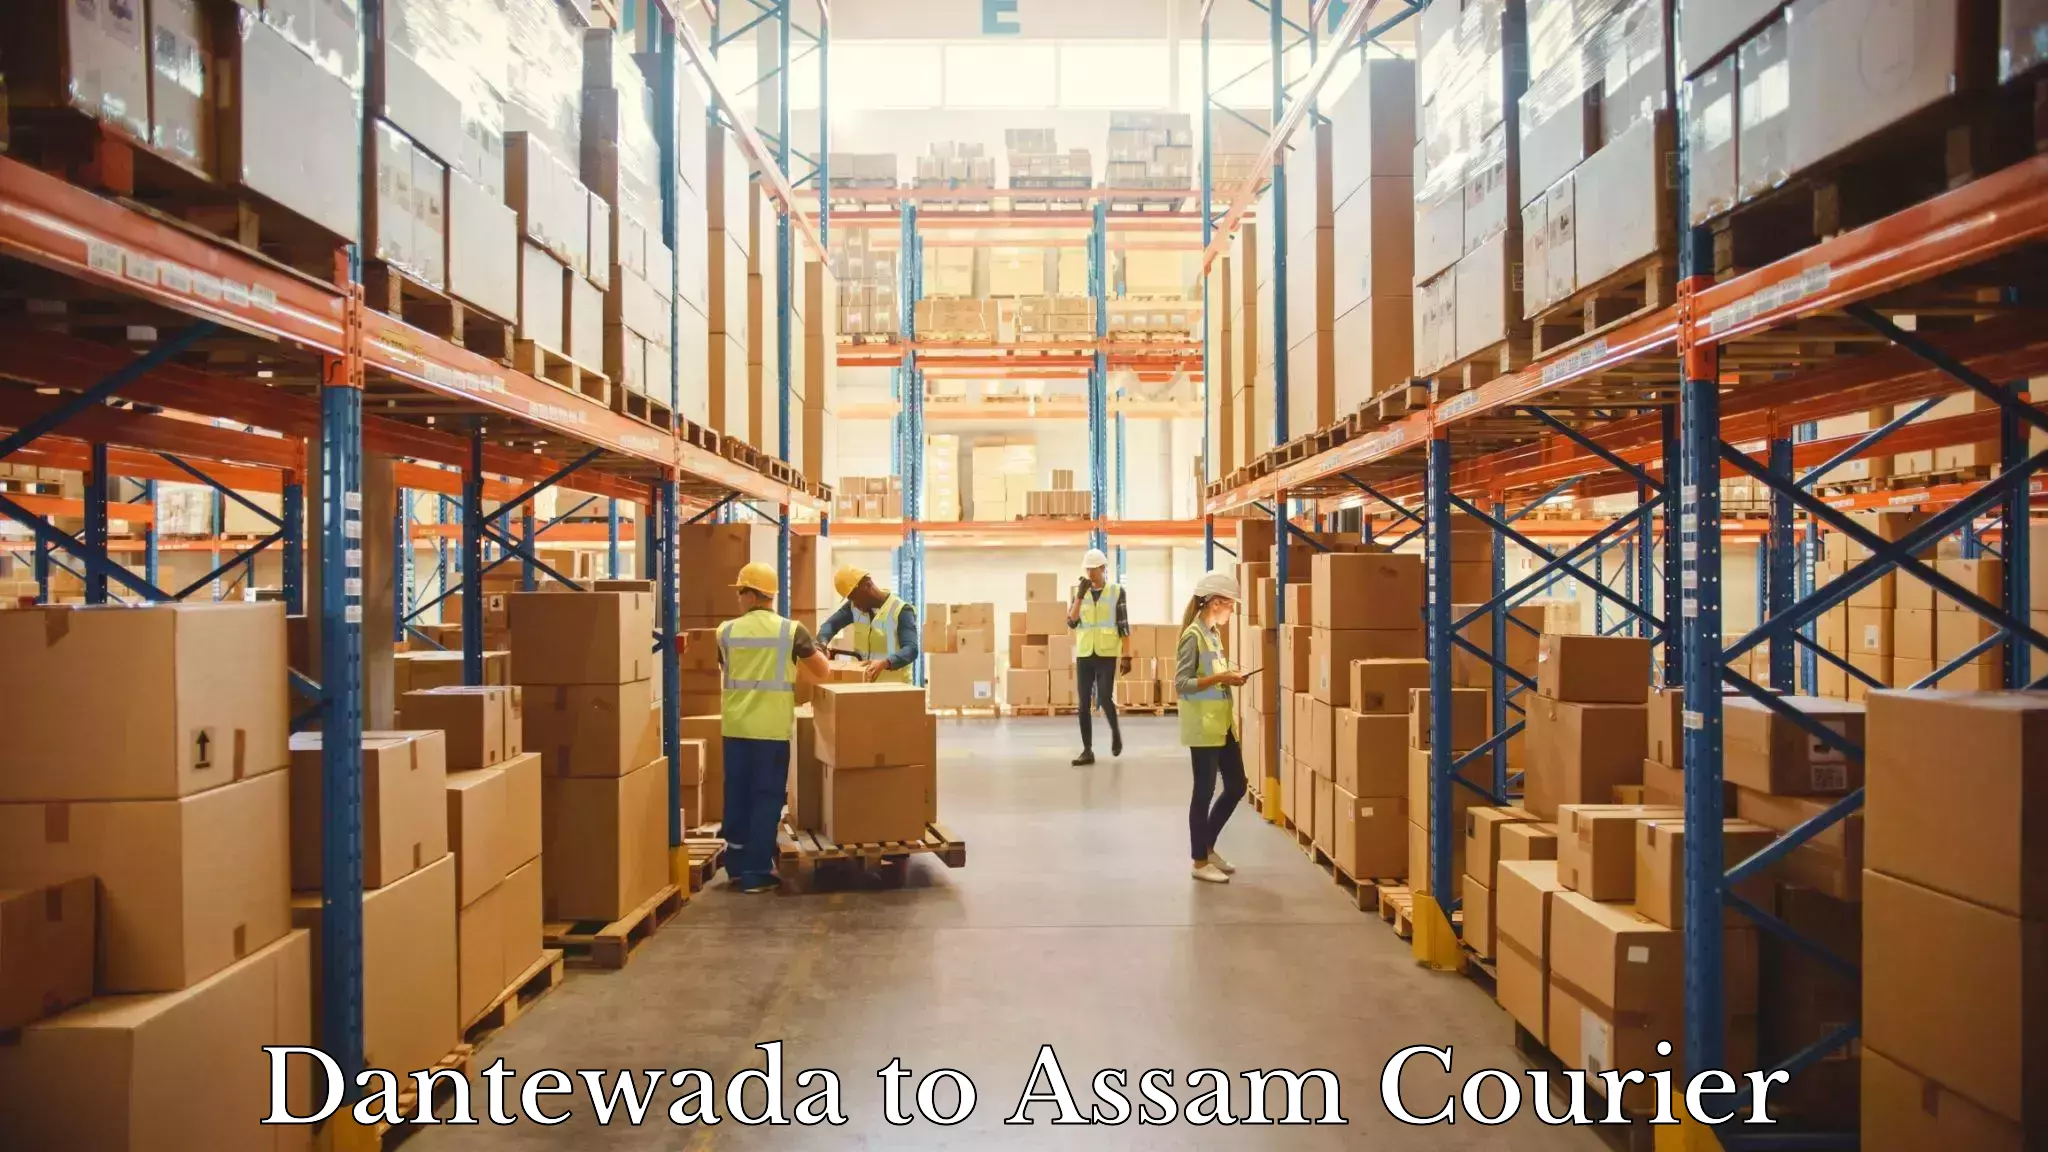 Express courier facilities Dantewada to Dhemaji